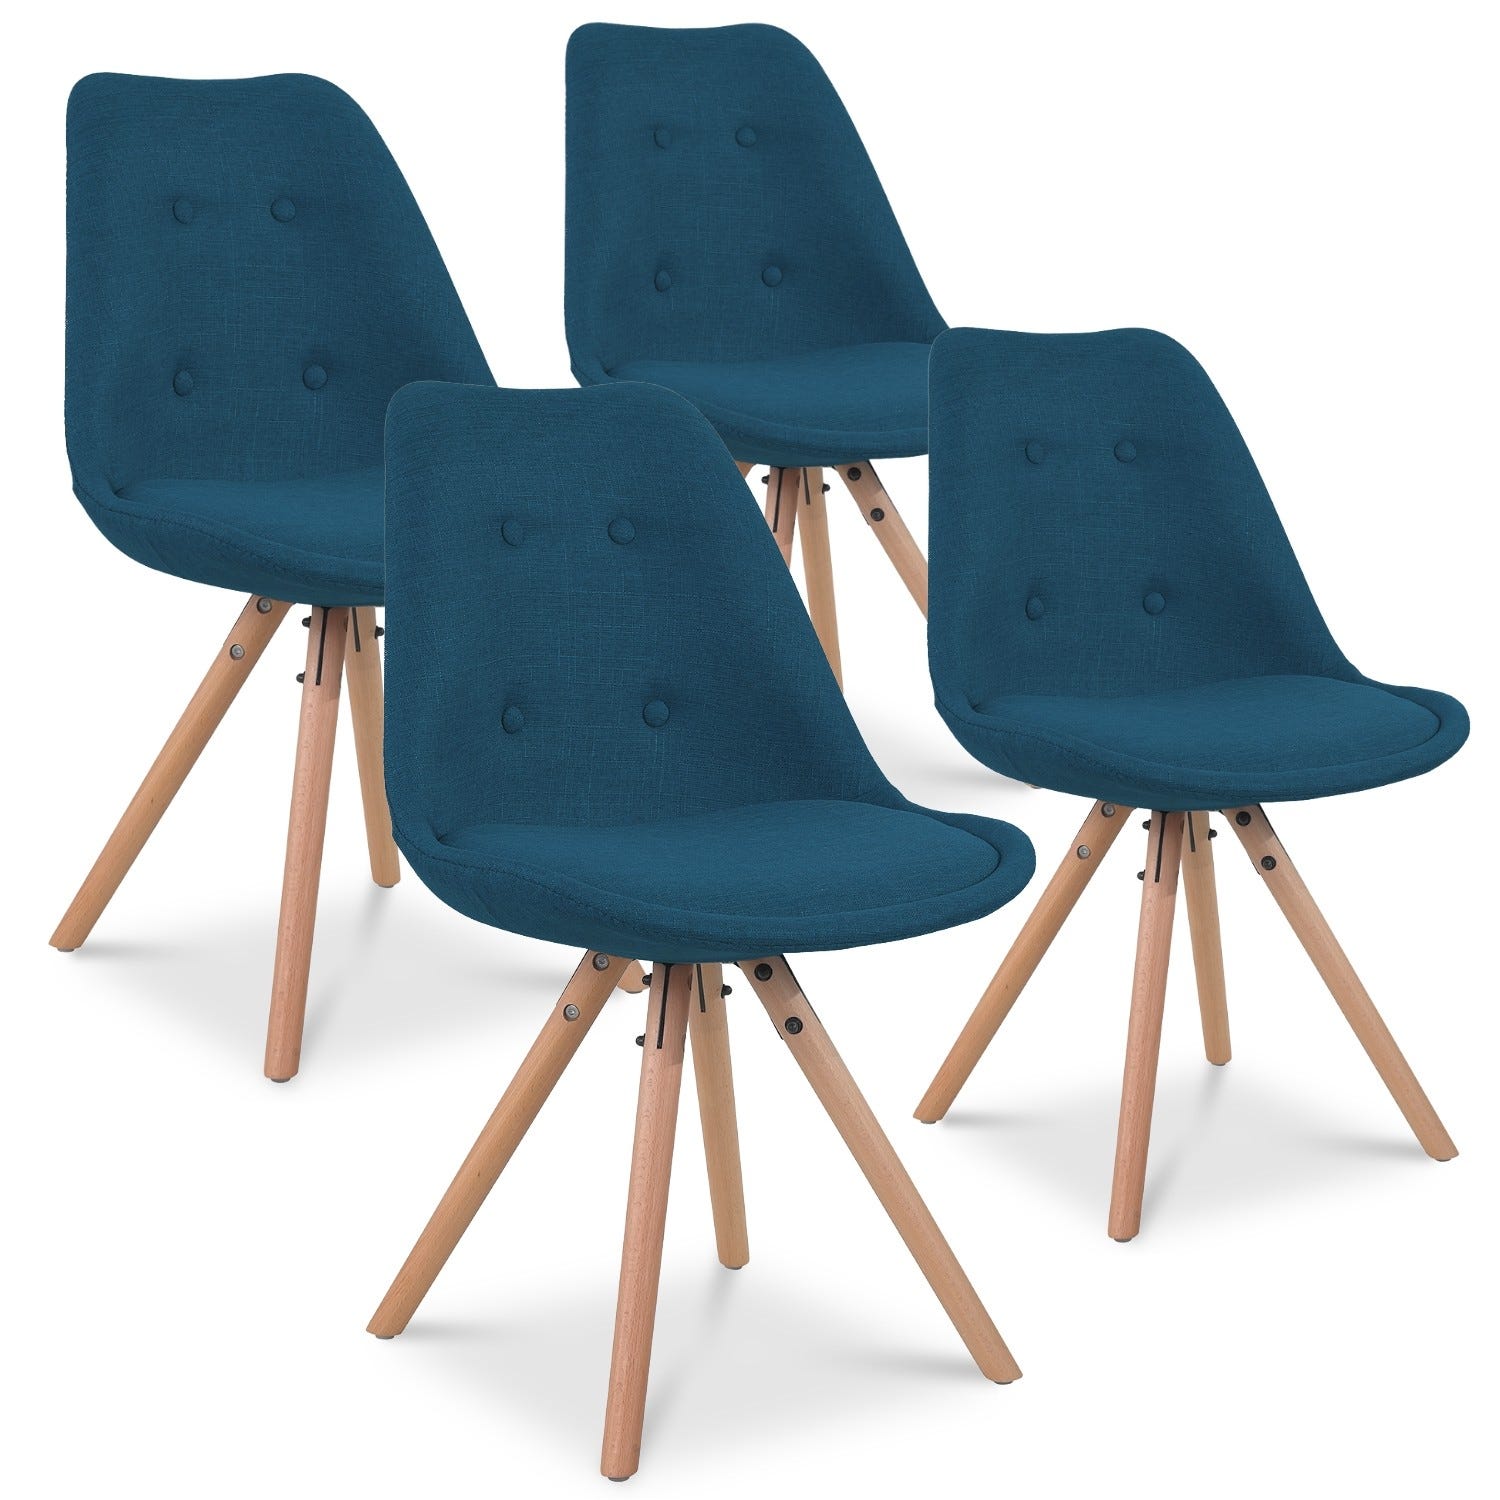 Lot de 4 chaises scandinaves GABY bleues en tissu pour salle à manger